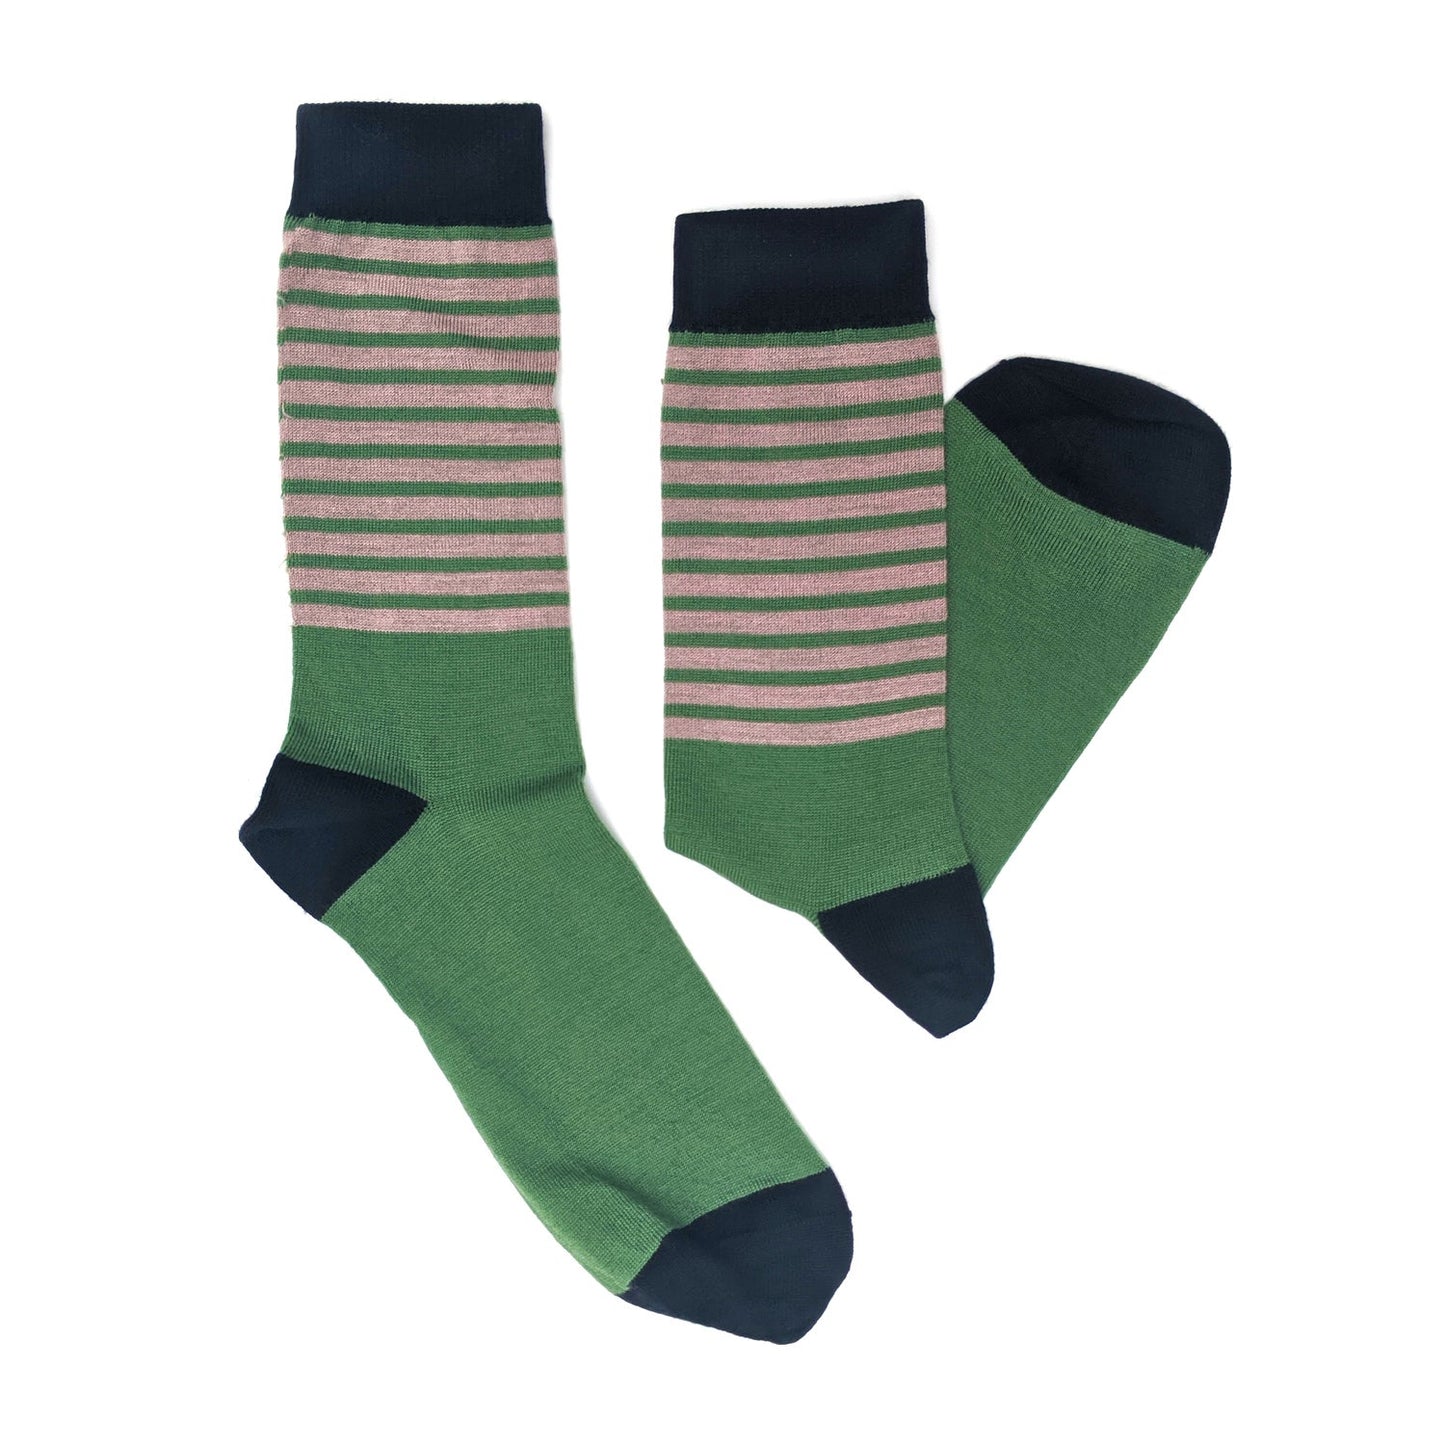 Green Lines Socks by Turumeke Harrington